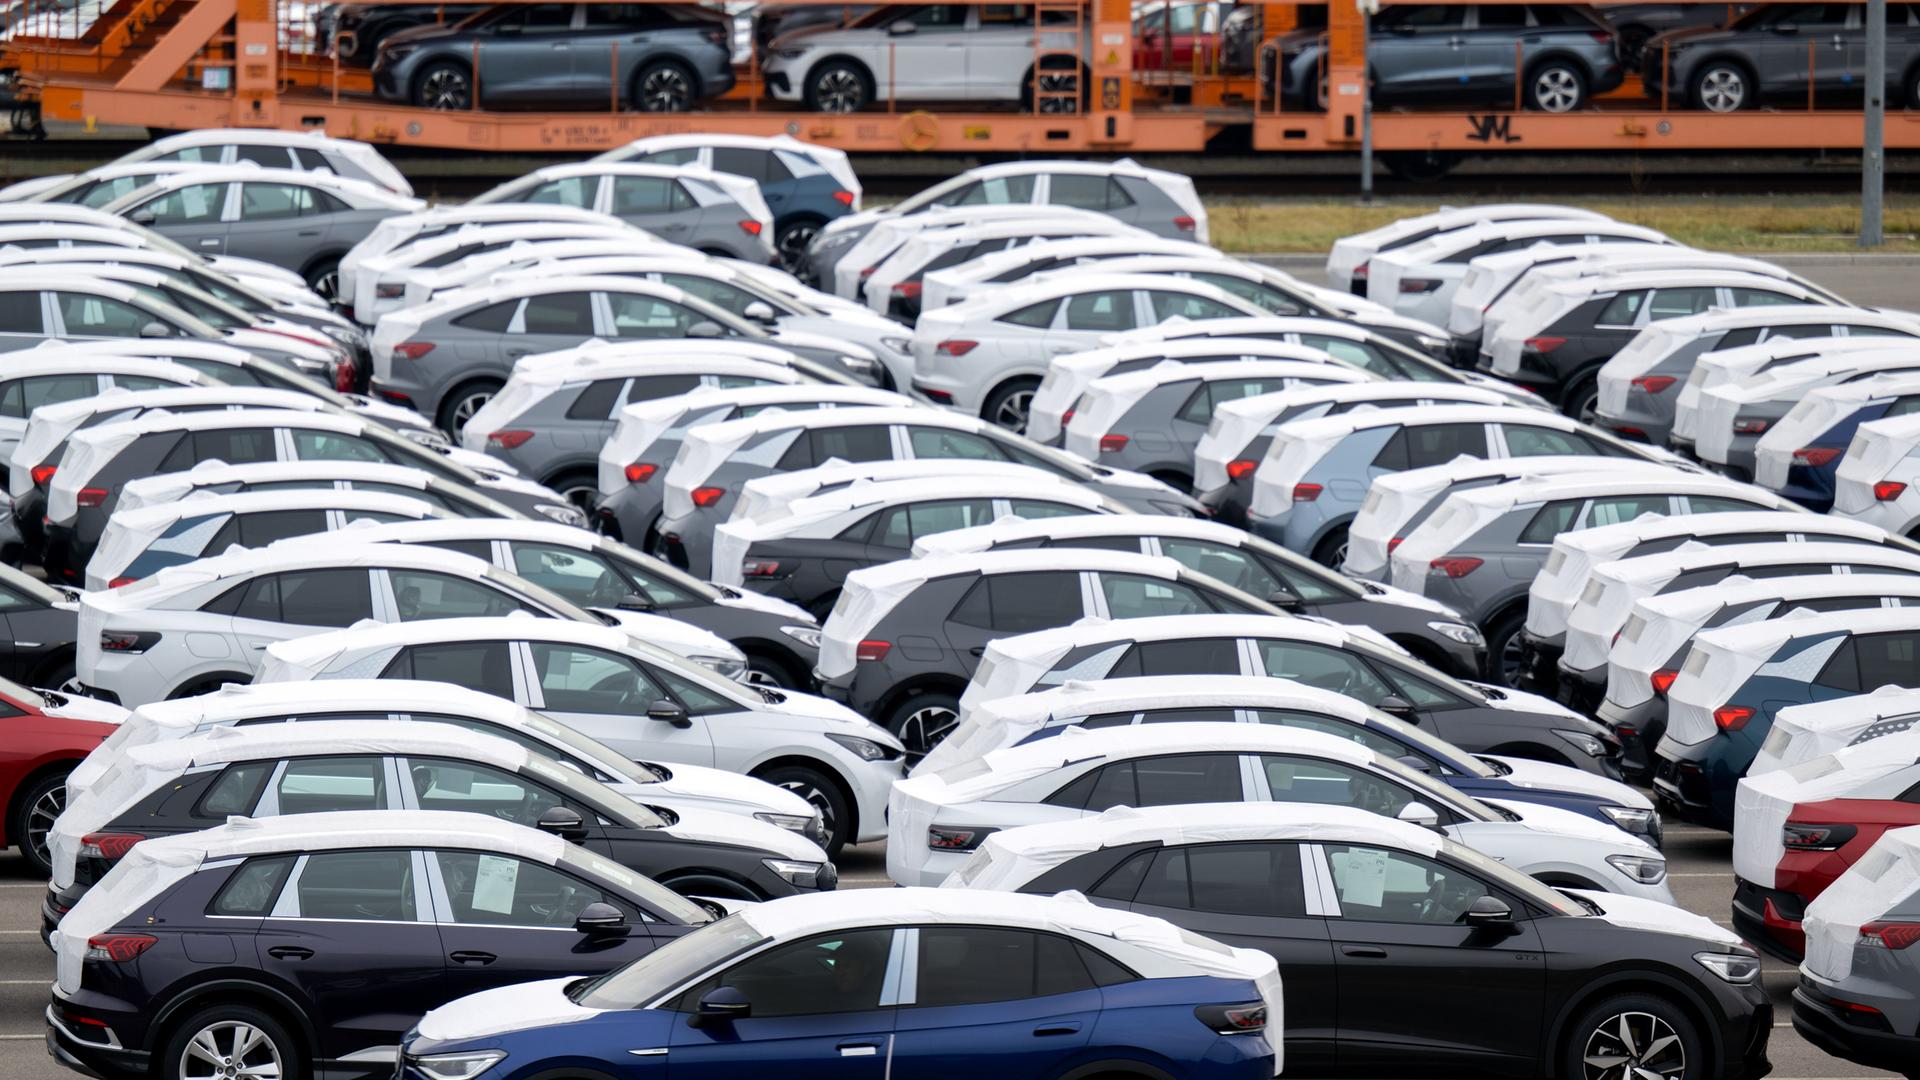 Fertige, vollelektrische Fahrzeuge aus dem Volkswagenwerk in Zwickau stehen auf einem Parkplatz im Werk. Der Beauftragte der Bundesregierung für Ostdeutschland hat am Donnerstag (23.02.2023) das Werk besucht. In dem Werk laufen neben den VW-Fahrzeugen auch Autos der Konzernmarken Audi und Seat vom Band. Die Fahrzeuge basieren auf dem Modularen Elektrobaukasten. Volkswagen hat den Standort mit rund 9000 Beschäftigten für 1,2 Milliarden Euro zur reinen Fabrik für Elektrofahrzeuge umgebaut und die Transformation zum E-Standort nun abgeschlossen.